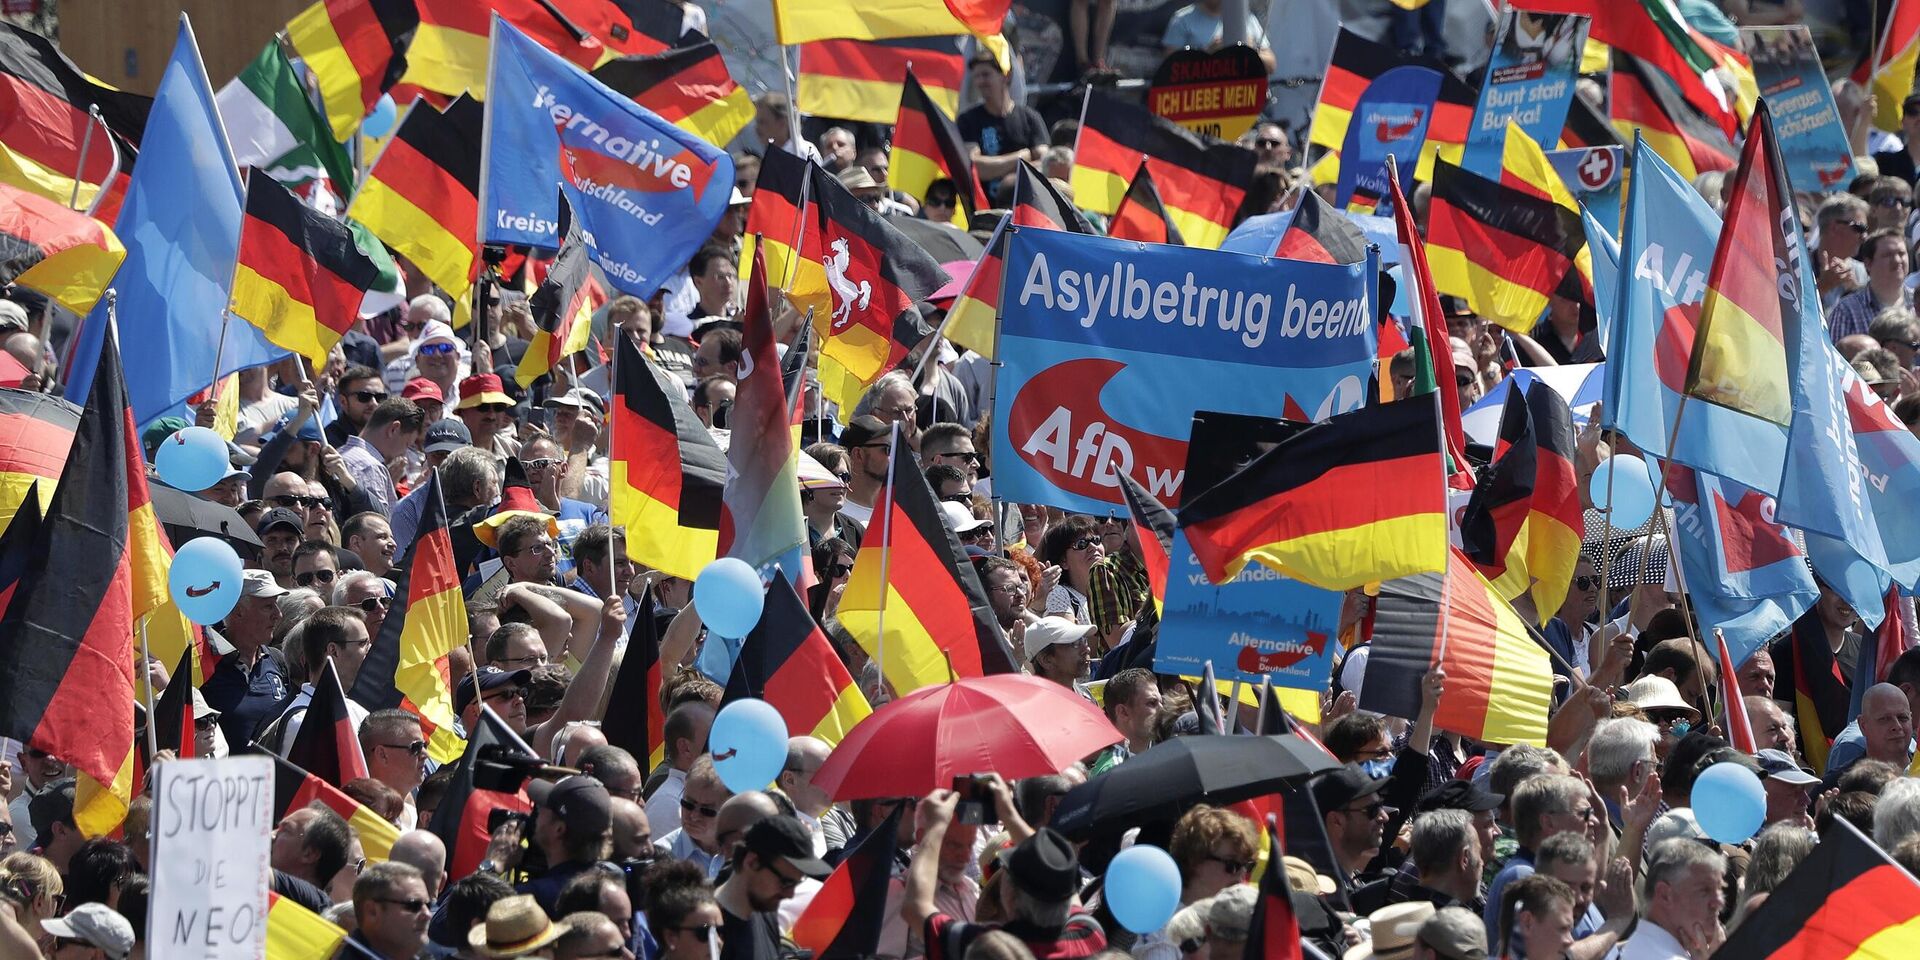 Сторонники партии Альтернатива для Германии на митинге в Берлине, Германия. 27 мая 2018 года - ИноСМИ, 1920, 23.03.2024